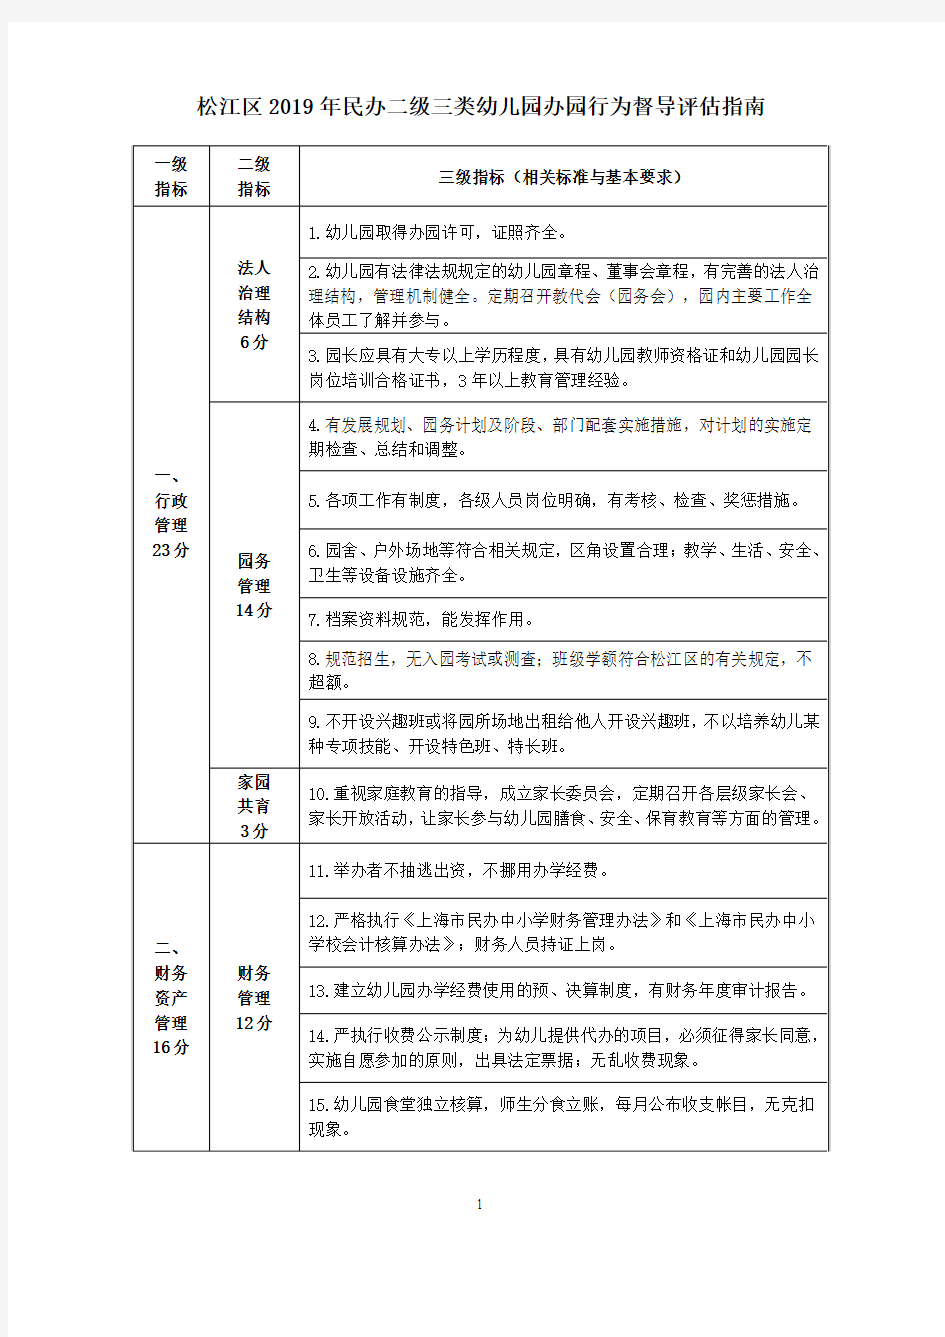 松江区 2019 年民办二级三类幼儿园办园行为督导评估指南